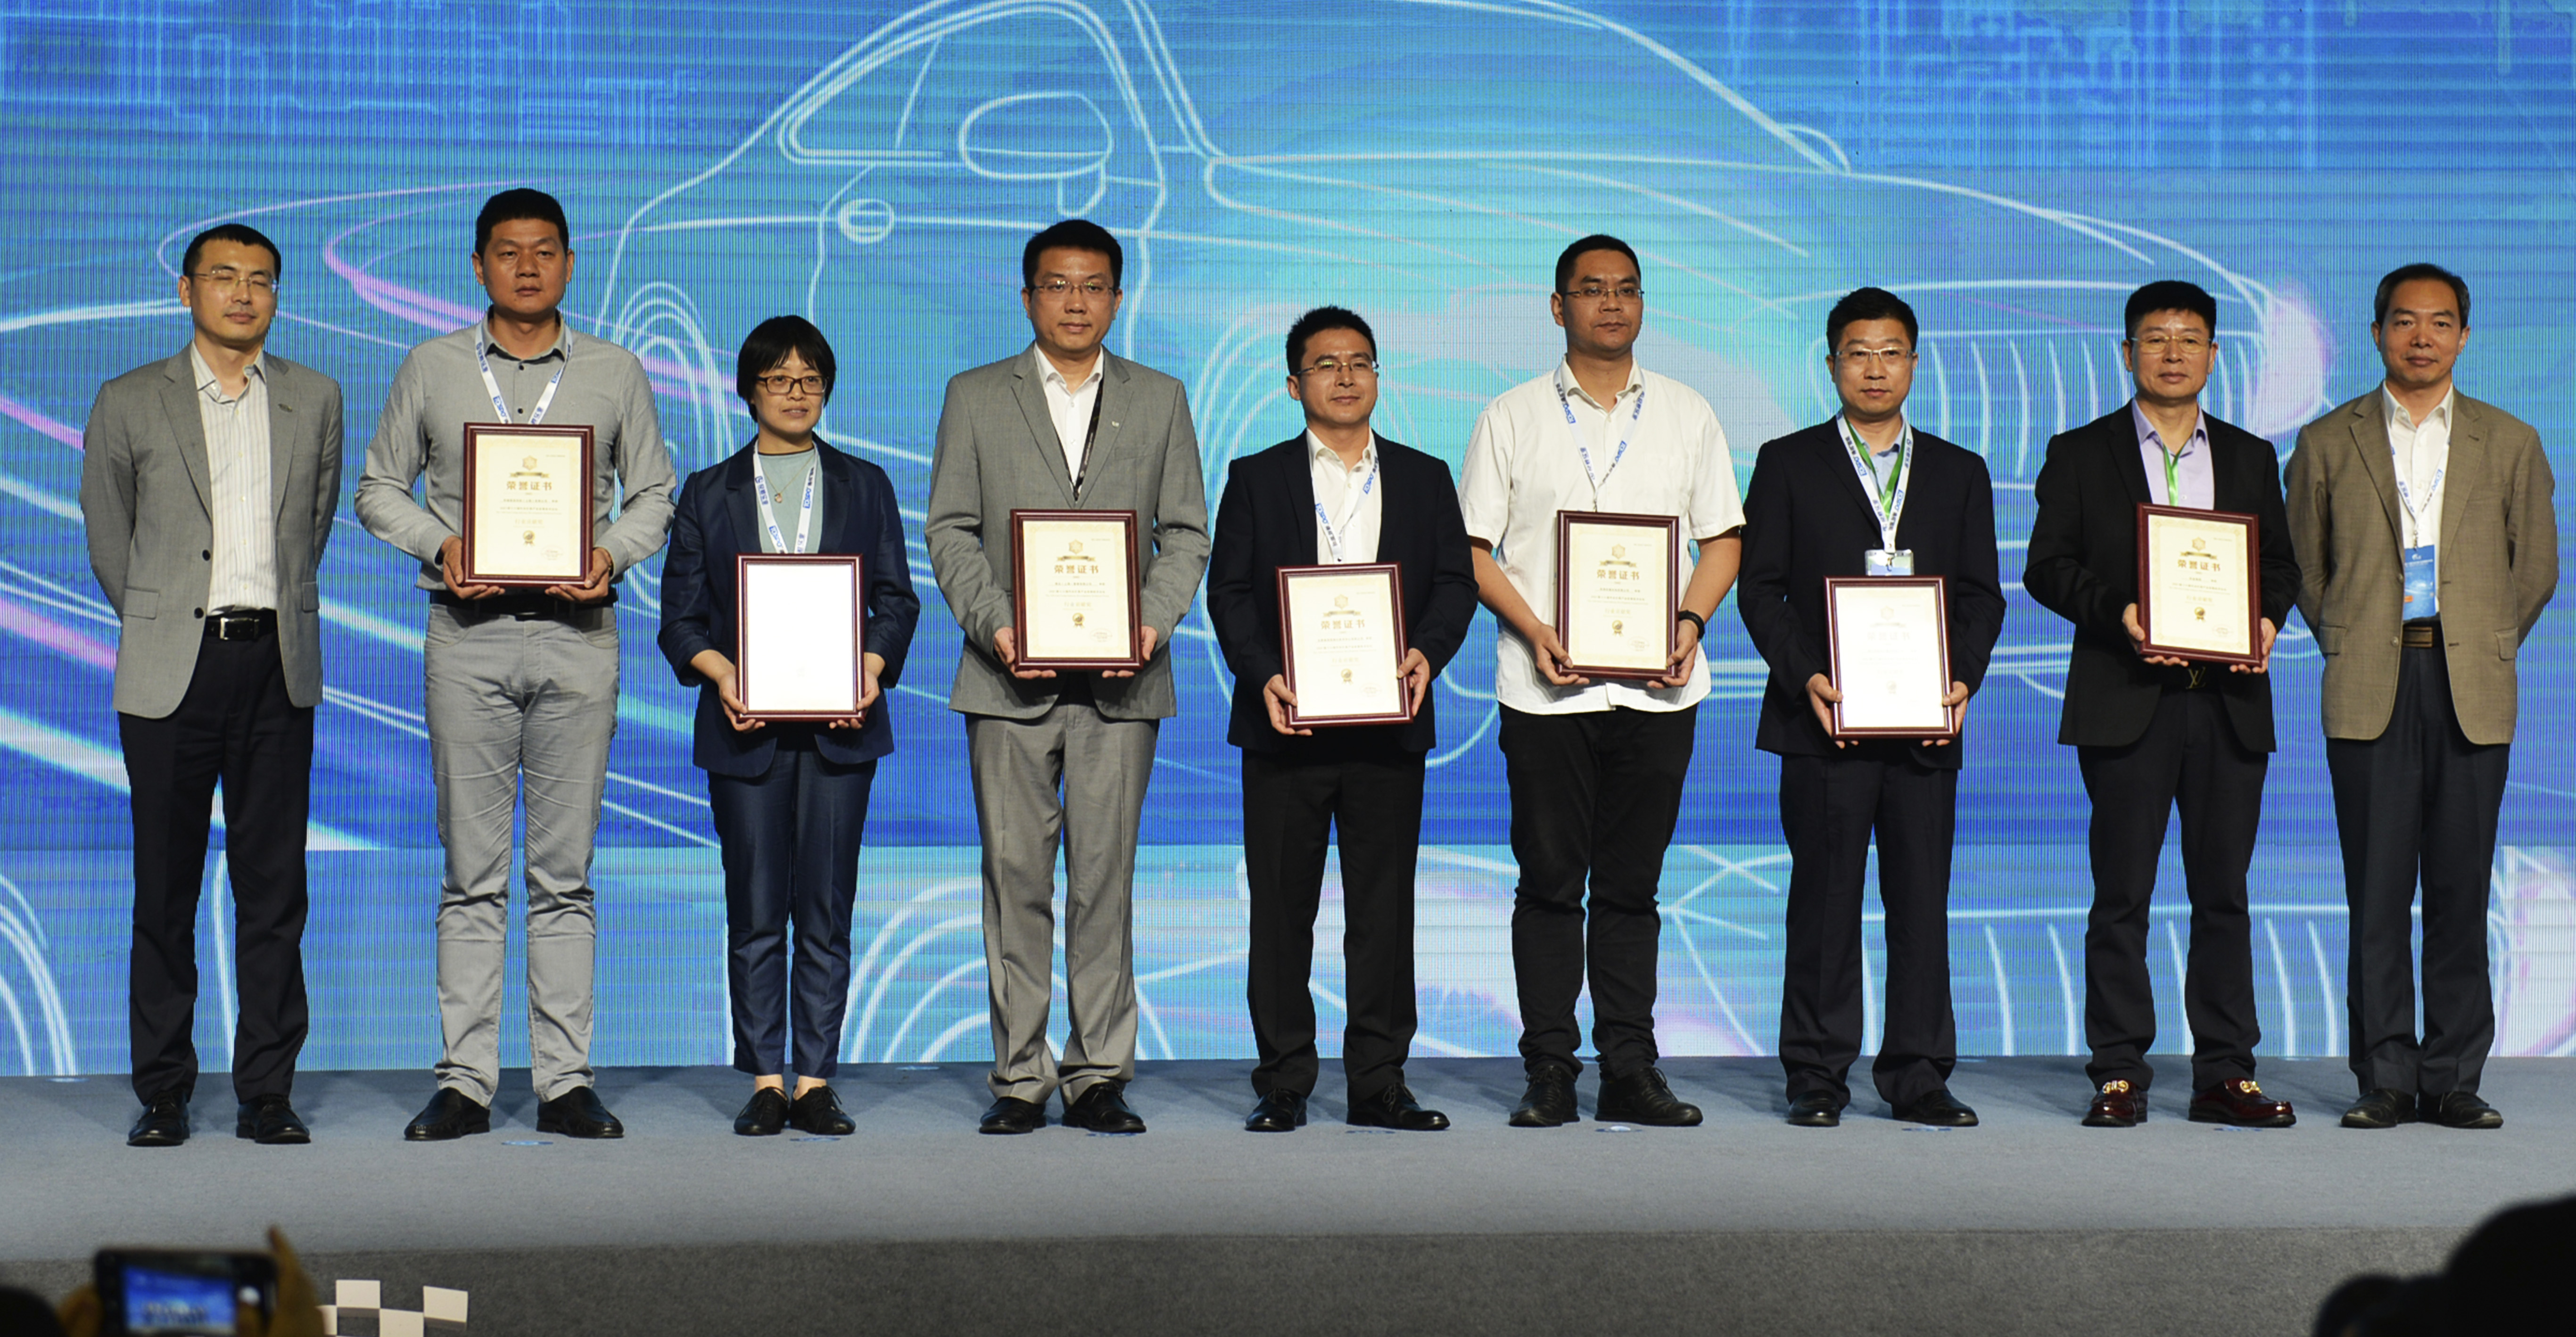 星宇股份榮獲第十六屆汽車燈具產業發展技術論壇“行業貢獻獎”